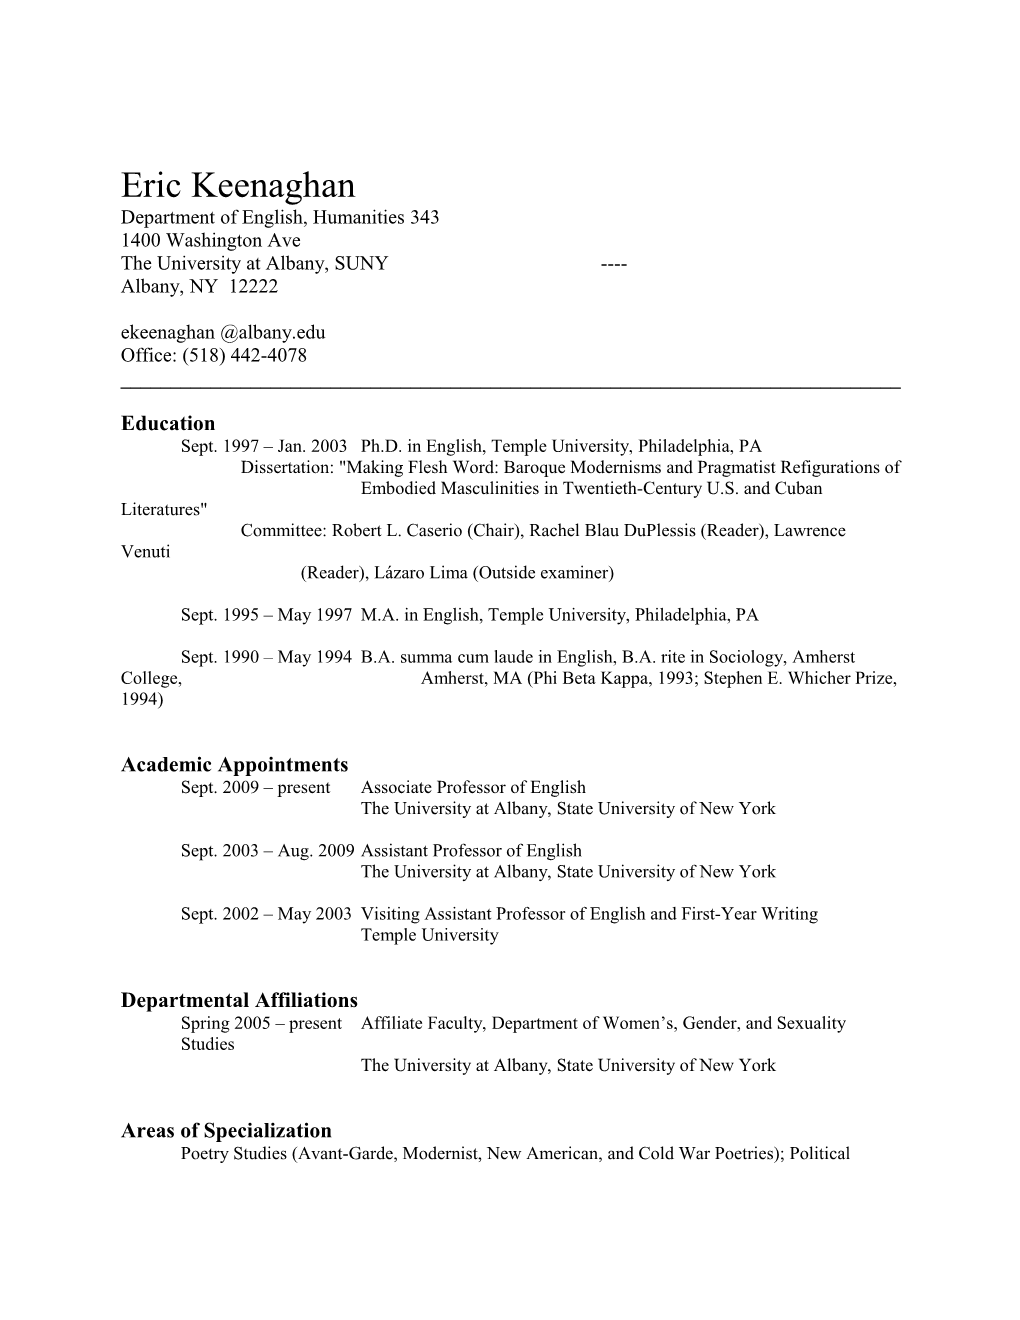 Eric Keenaghan Vita (Updated March 18, 2016)